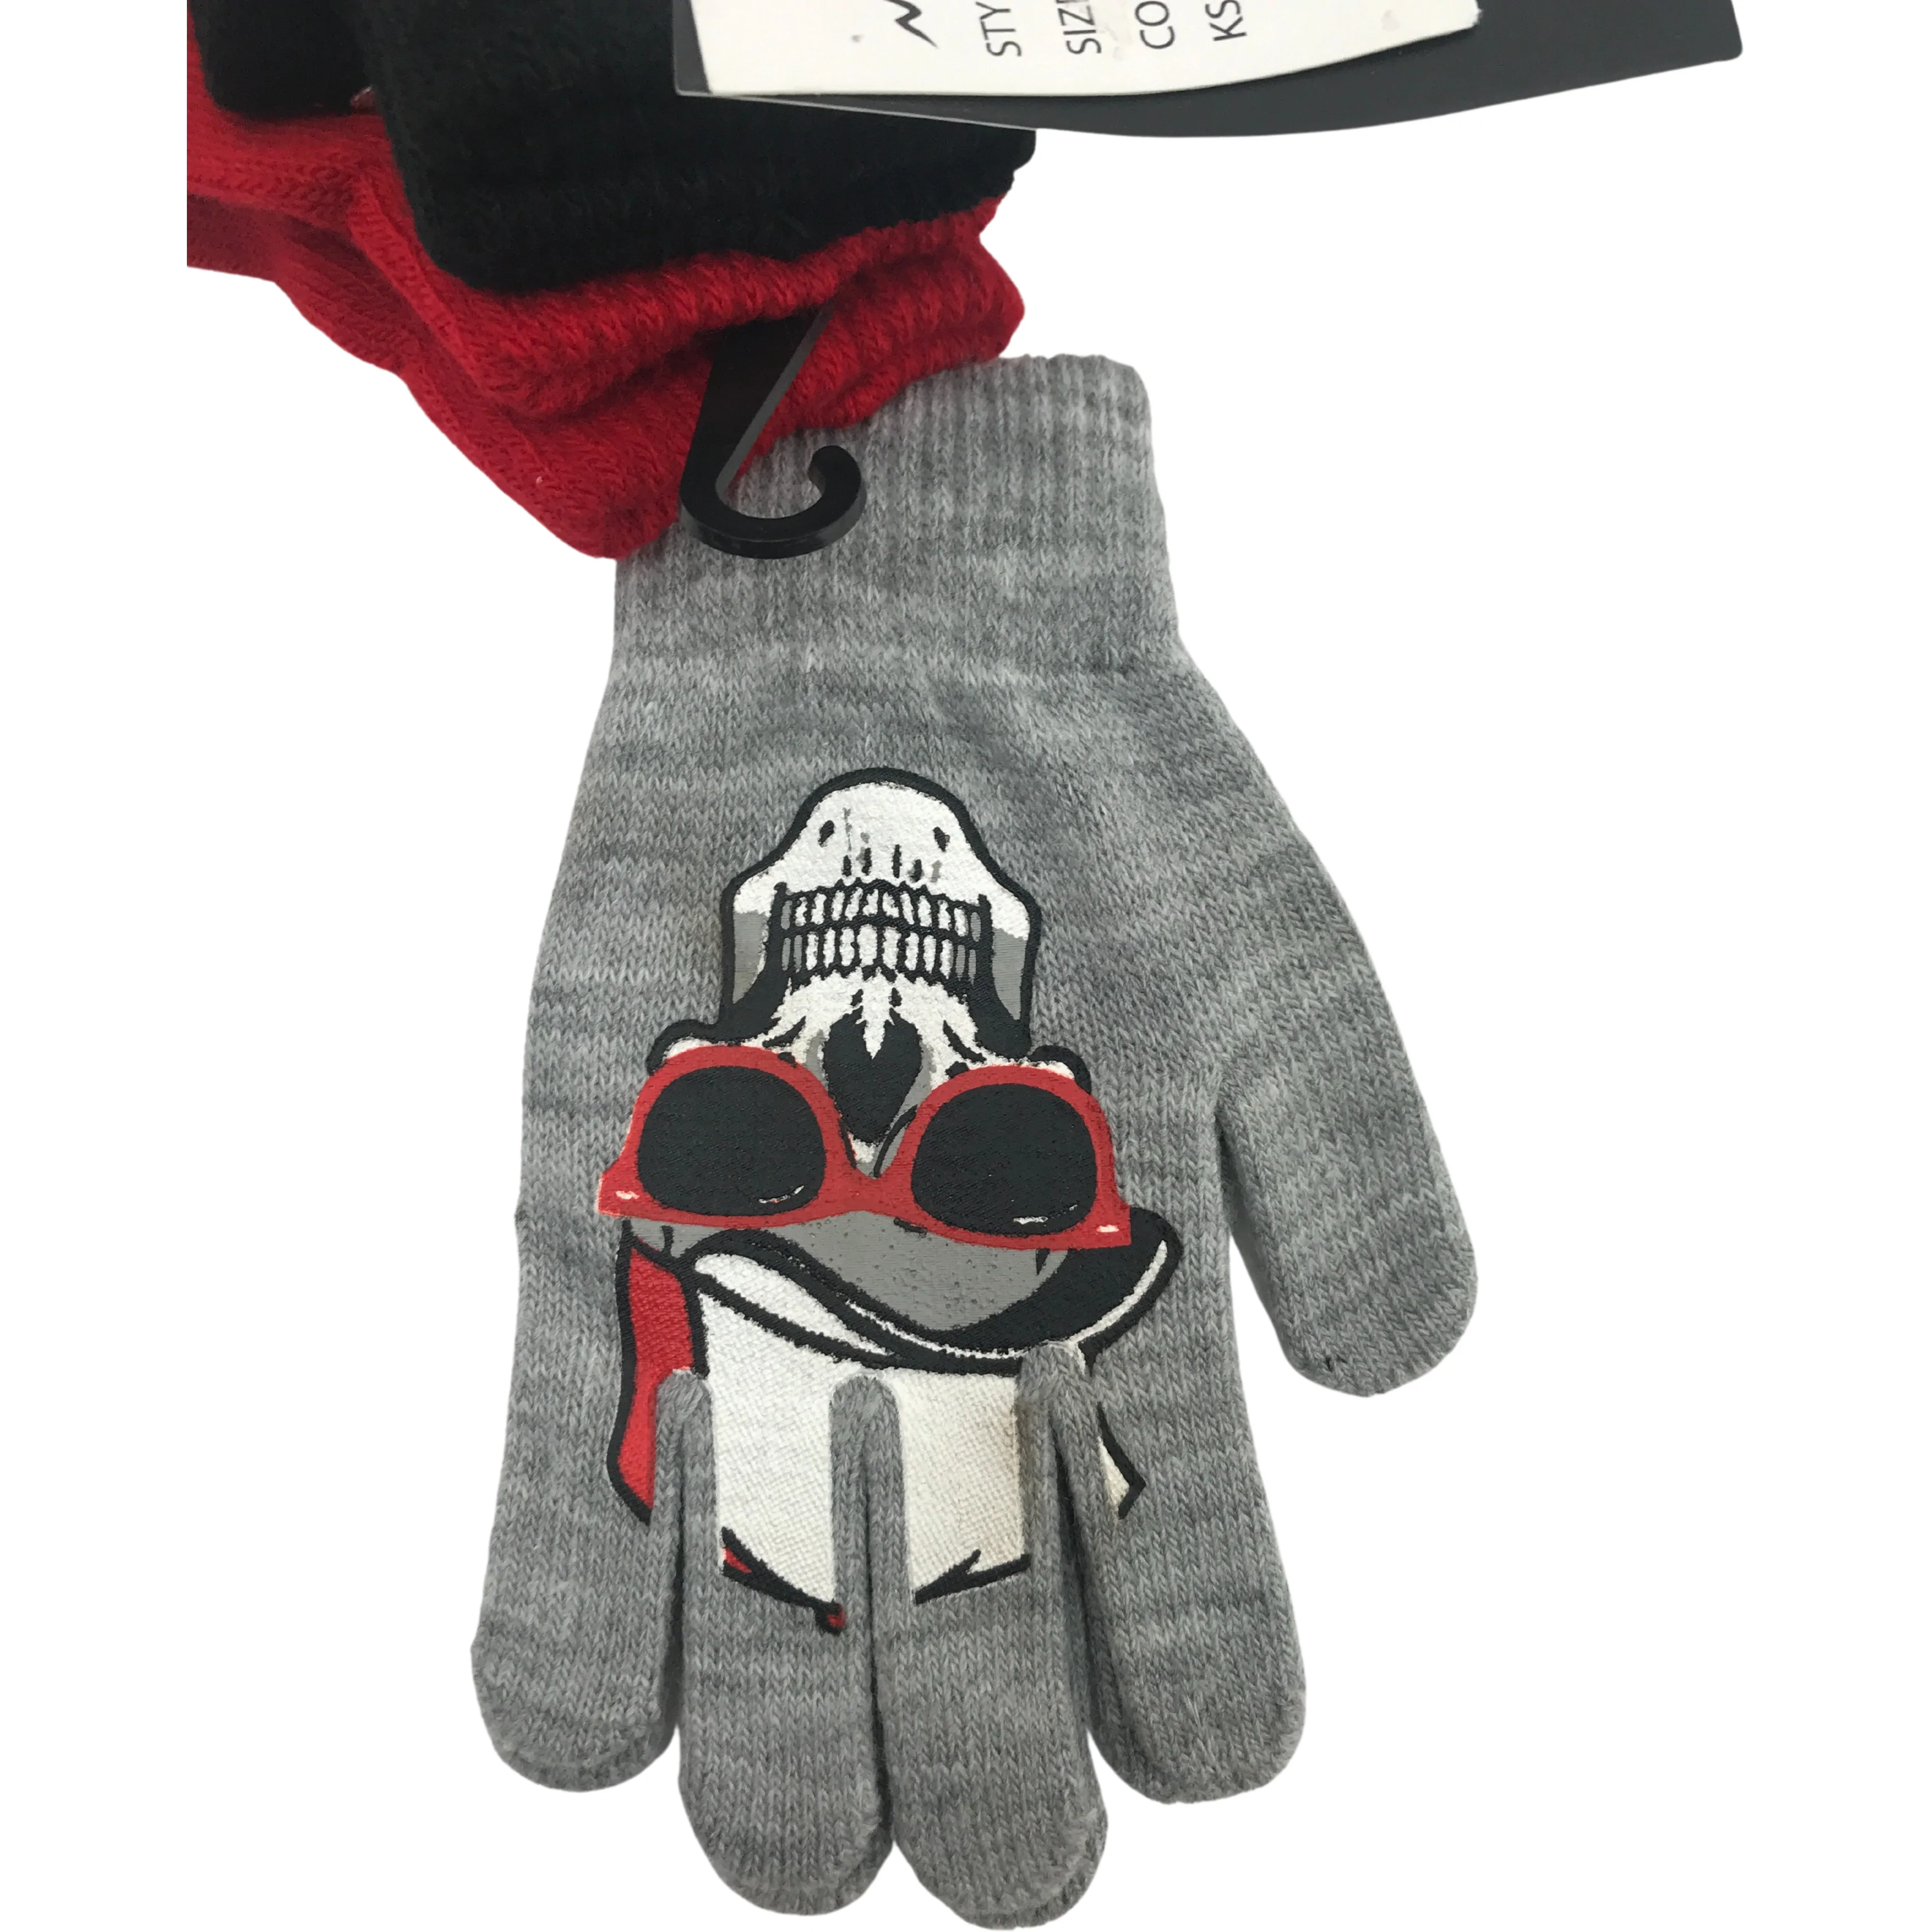 Minus Zero Children's Winter Gloves / Boy's Gloves / Lightweight Gloves / 3 Pack / Red & Black / One Size